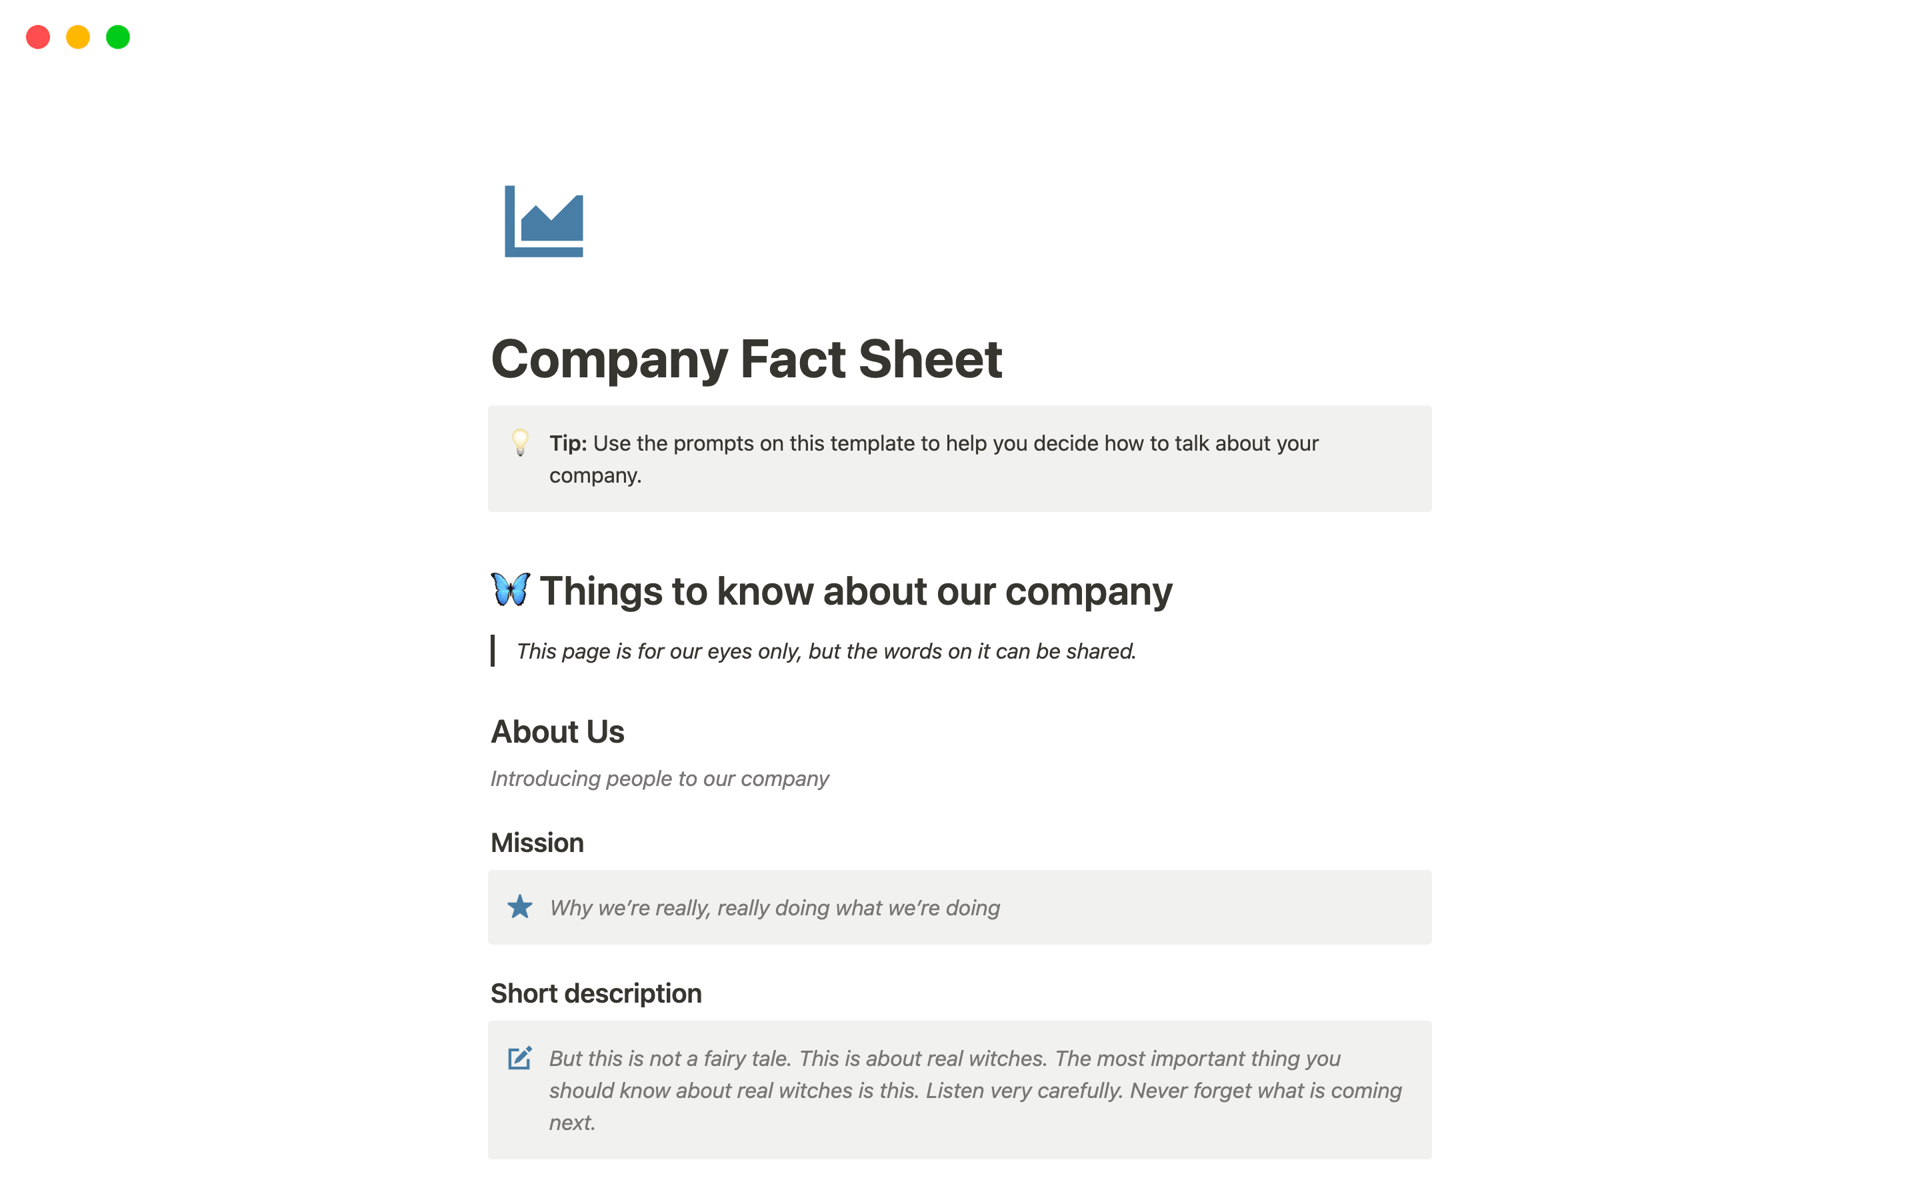 Vista previa de plantilla para Company Fact Sheet